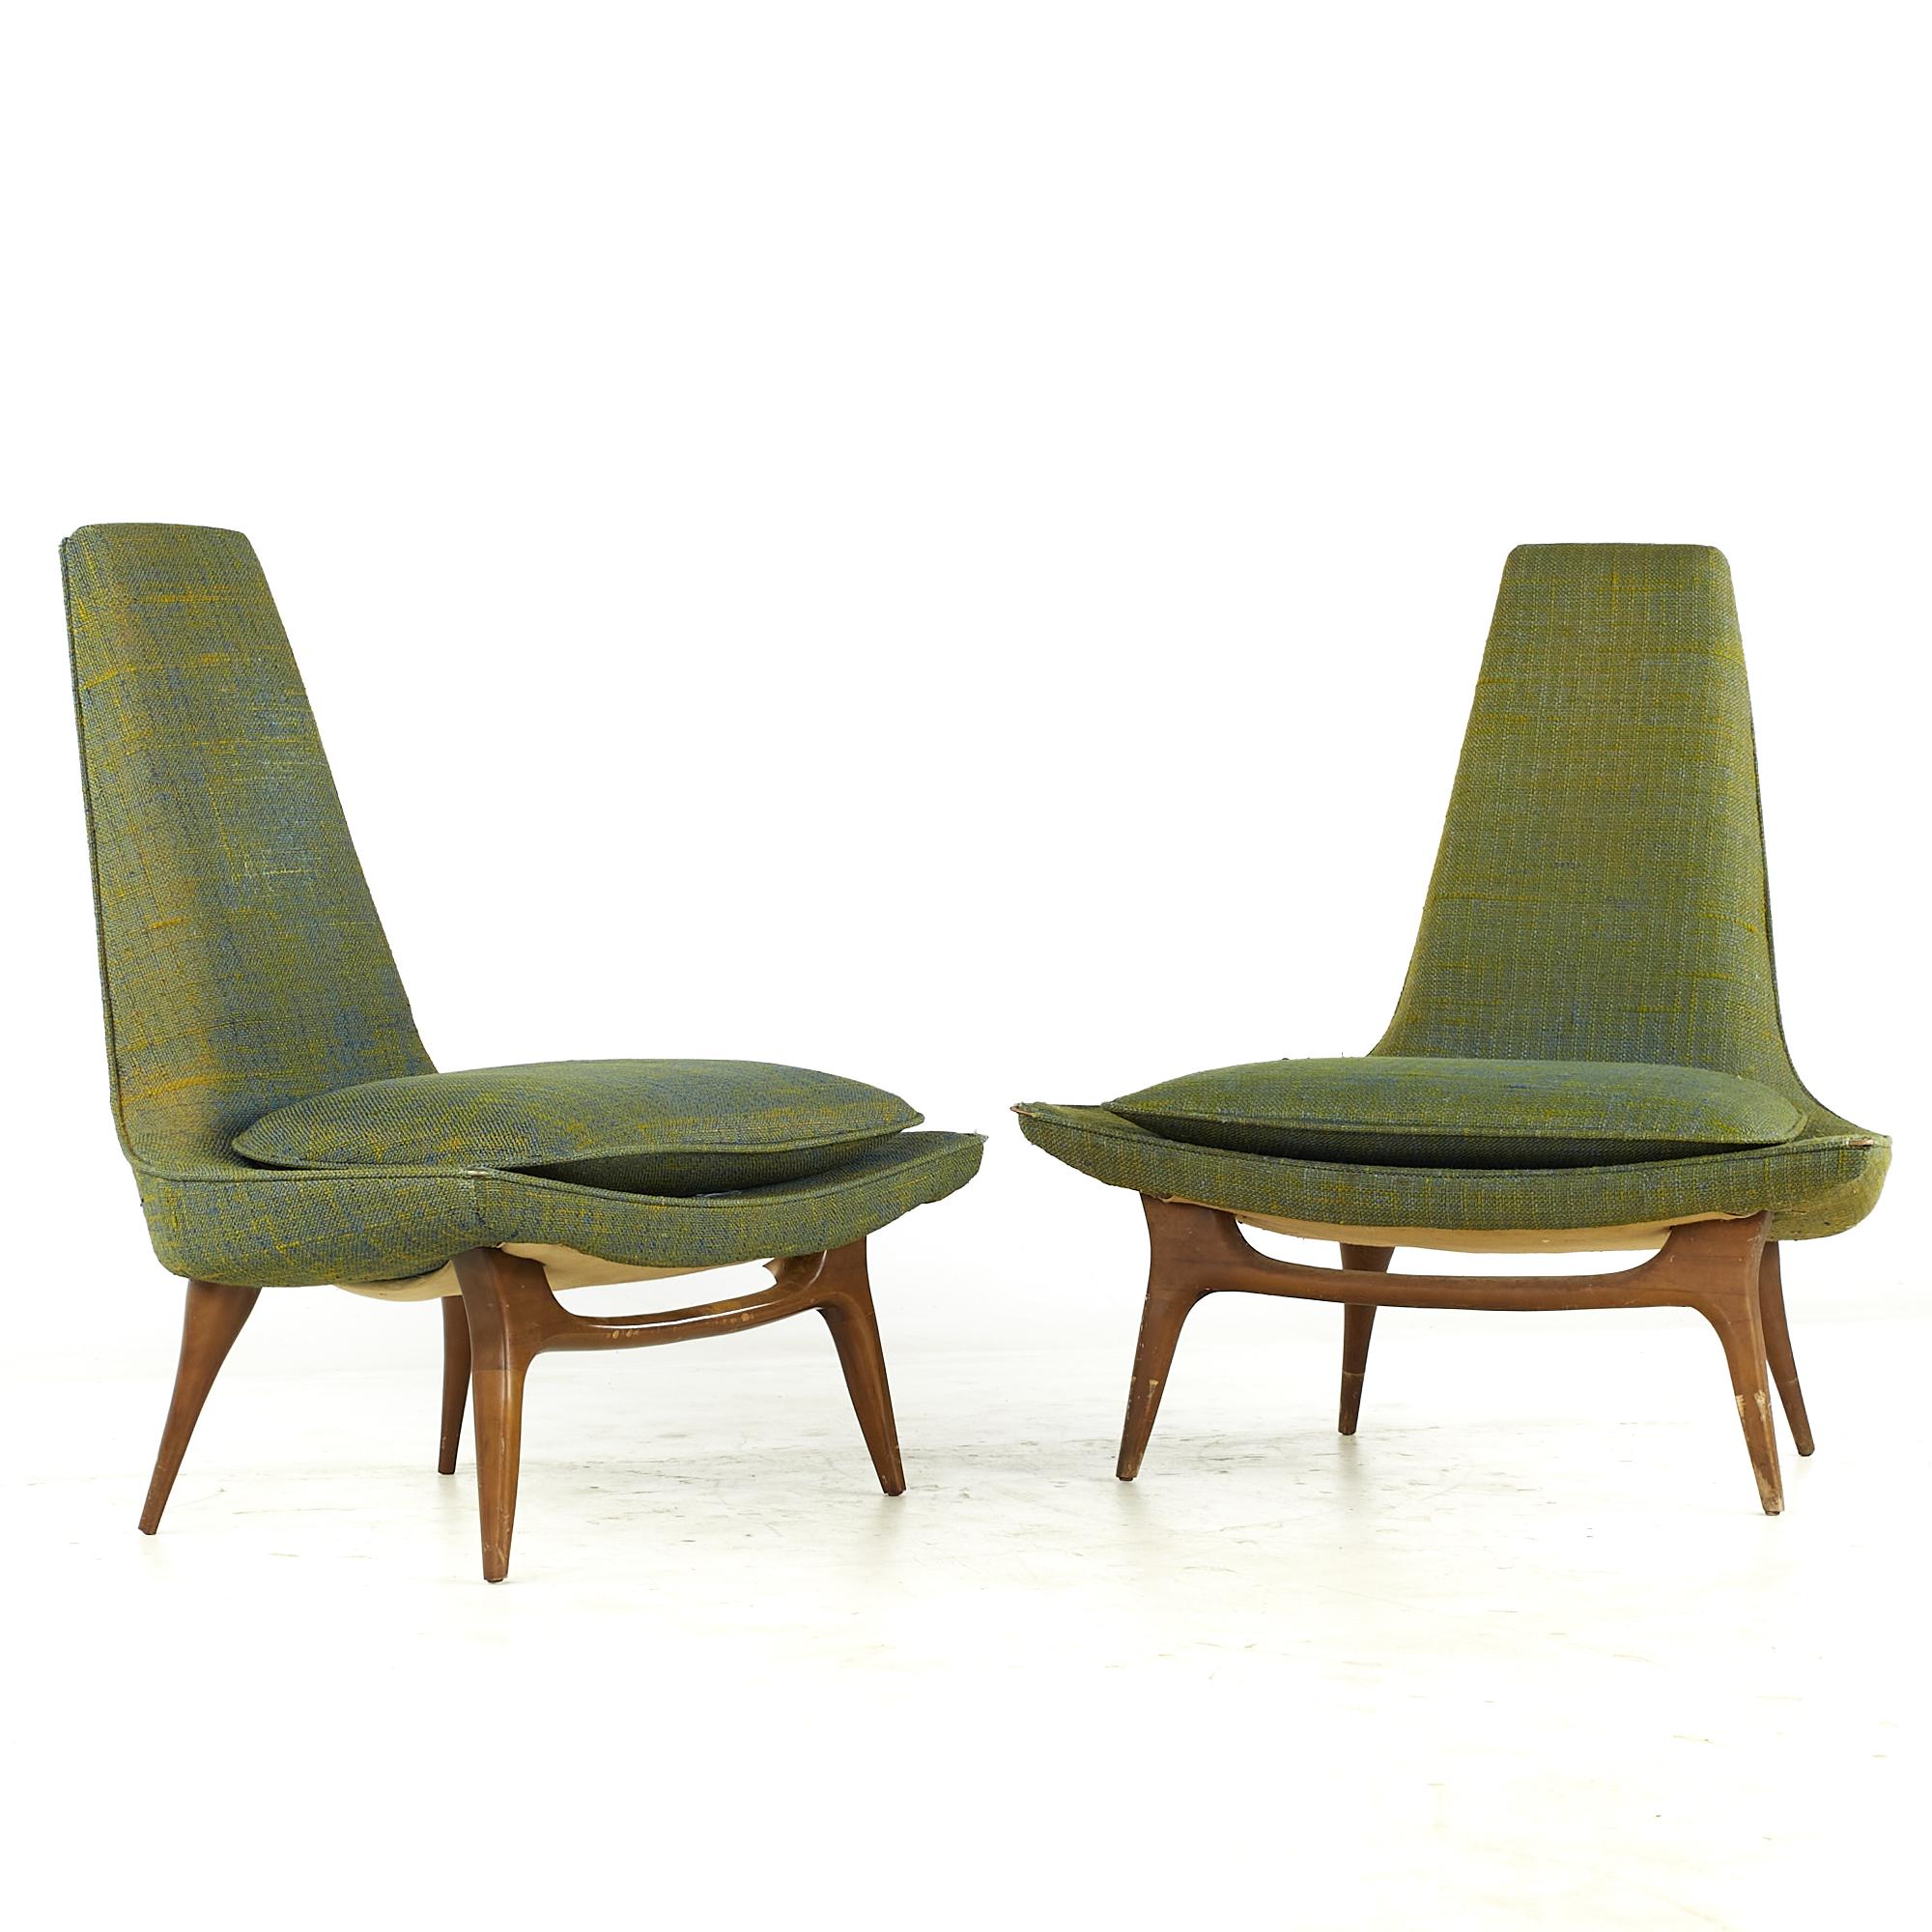 Karpen of California Mid Century Slipper Stuhl - Paar

Jeder Stuhl misst: 35,5 breit x 25 tief x 39 hoch, mit einer Sitzhöhe von 18 Zoll

Alle Möbelstücke sind in einem so genannten restaurierten Vintage-Zustand zu haben. Das bedeutet, dass das